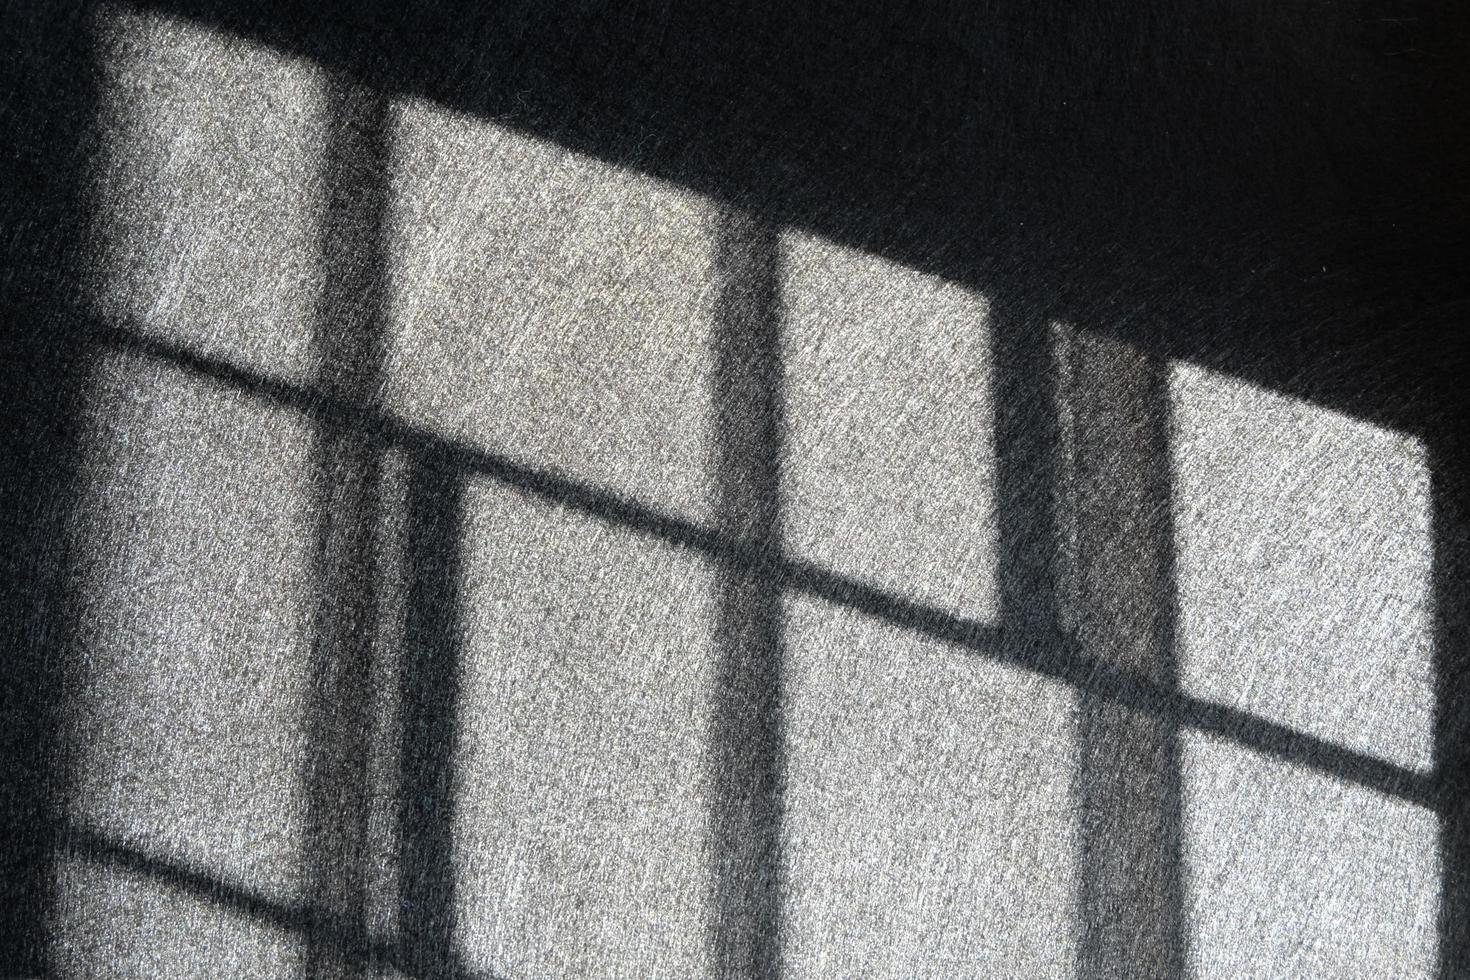 lumière et ombres d'acier de fenêtre. prison, prison, capture, contrôle, limite, arrestation, confusion, concepts sans issue. photo